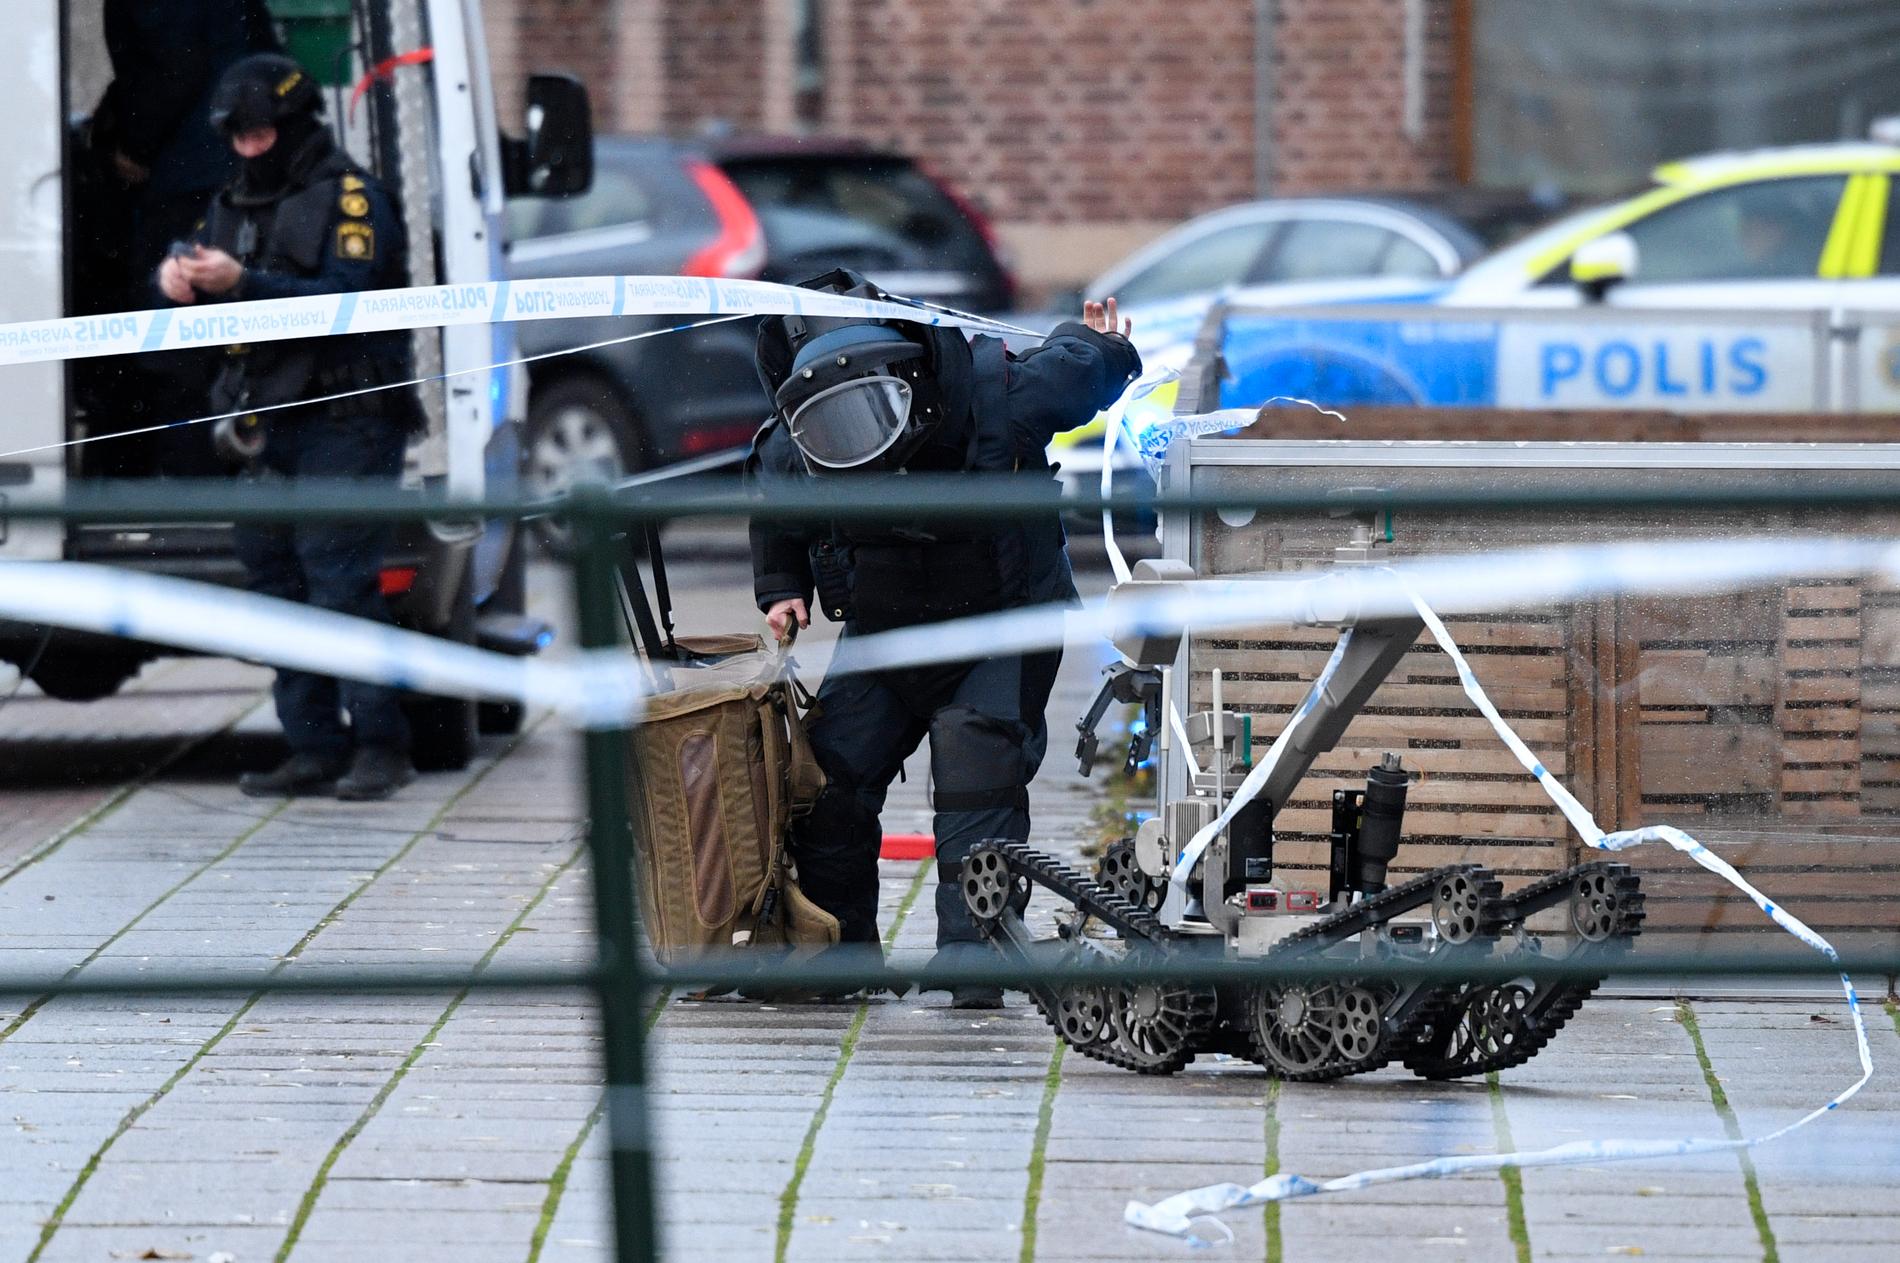 Polisens bombtekniker och bombrobot arbetar bakom avspärrningarna då man undersöker det misstänkt farliga föremålet vid en entré på Posthusplatsen.